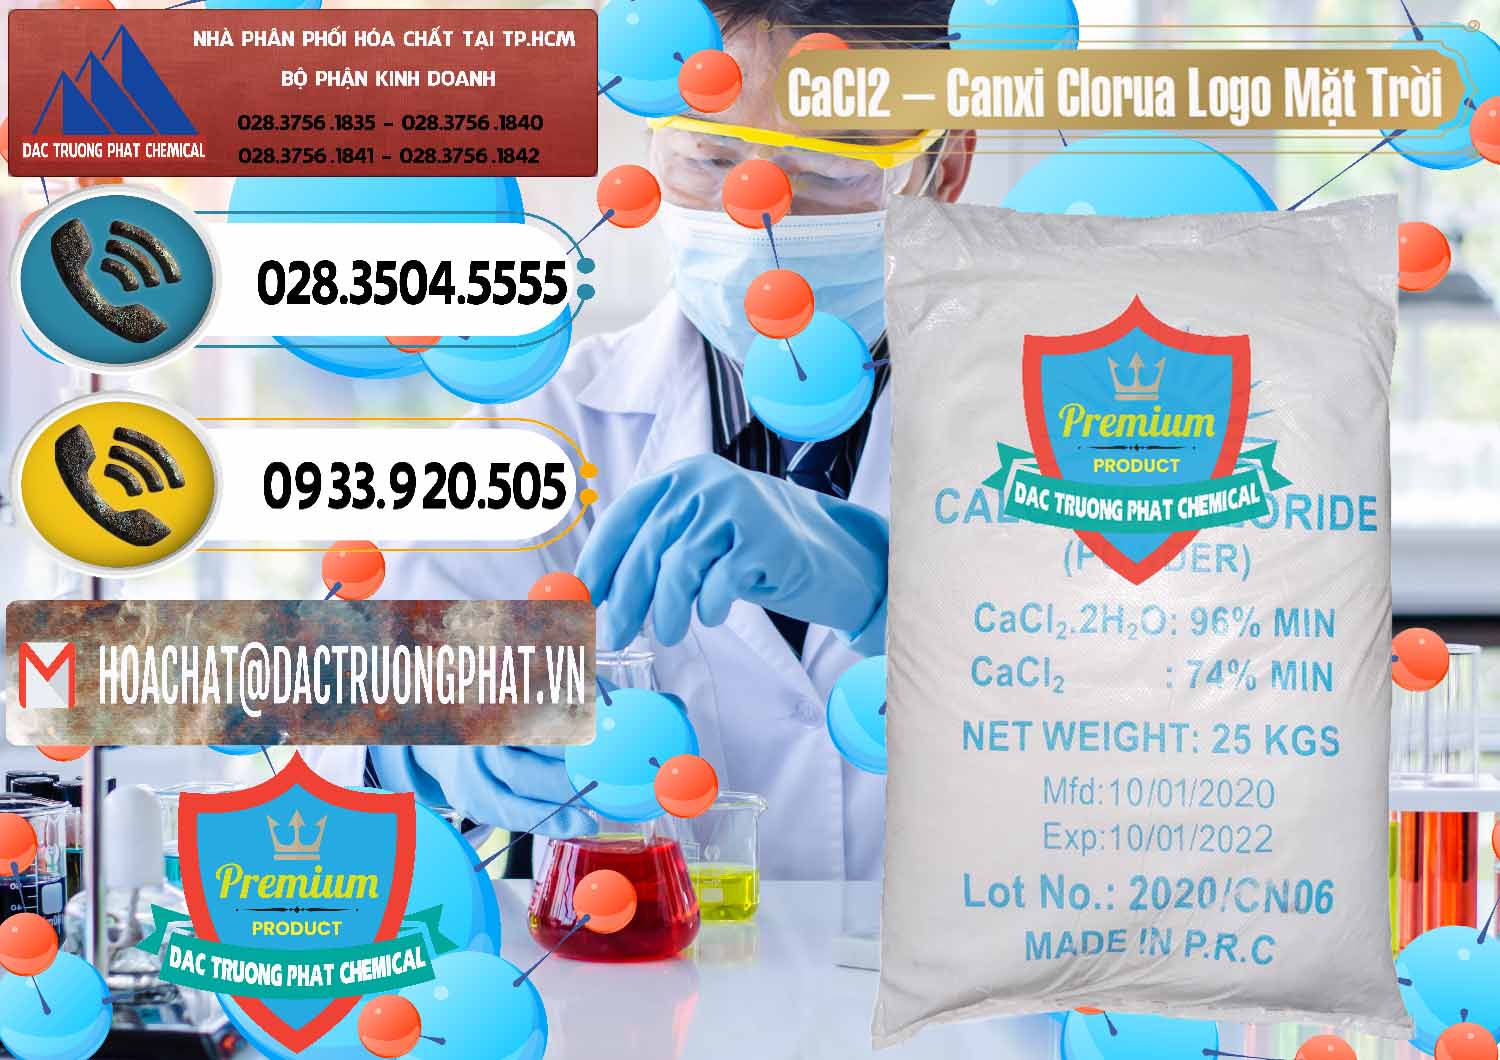 Cty chuyên kinh doanh - bán CaCl2 – Canxi Clorua 96% Logo Mặt Trời Trung Quốc China - 0041 - Cty cung cấp ( bán ) hóa chất tại TP.HCM - hoachatdetnhuom.vn